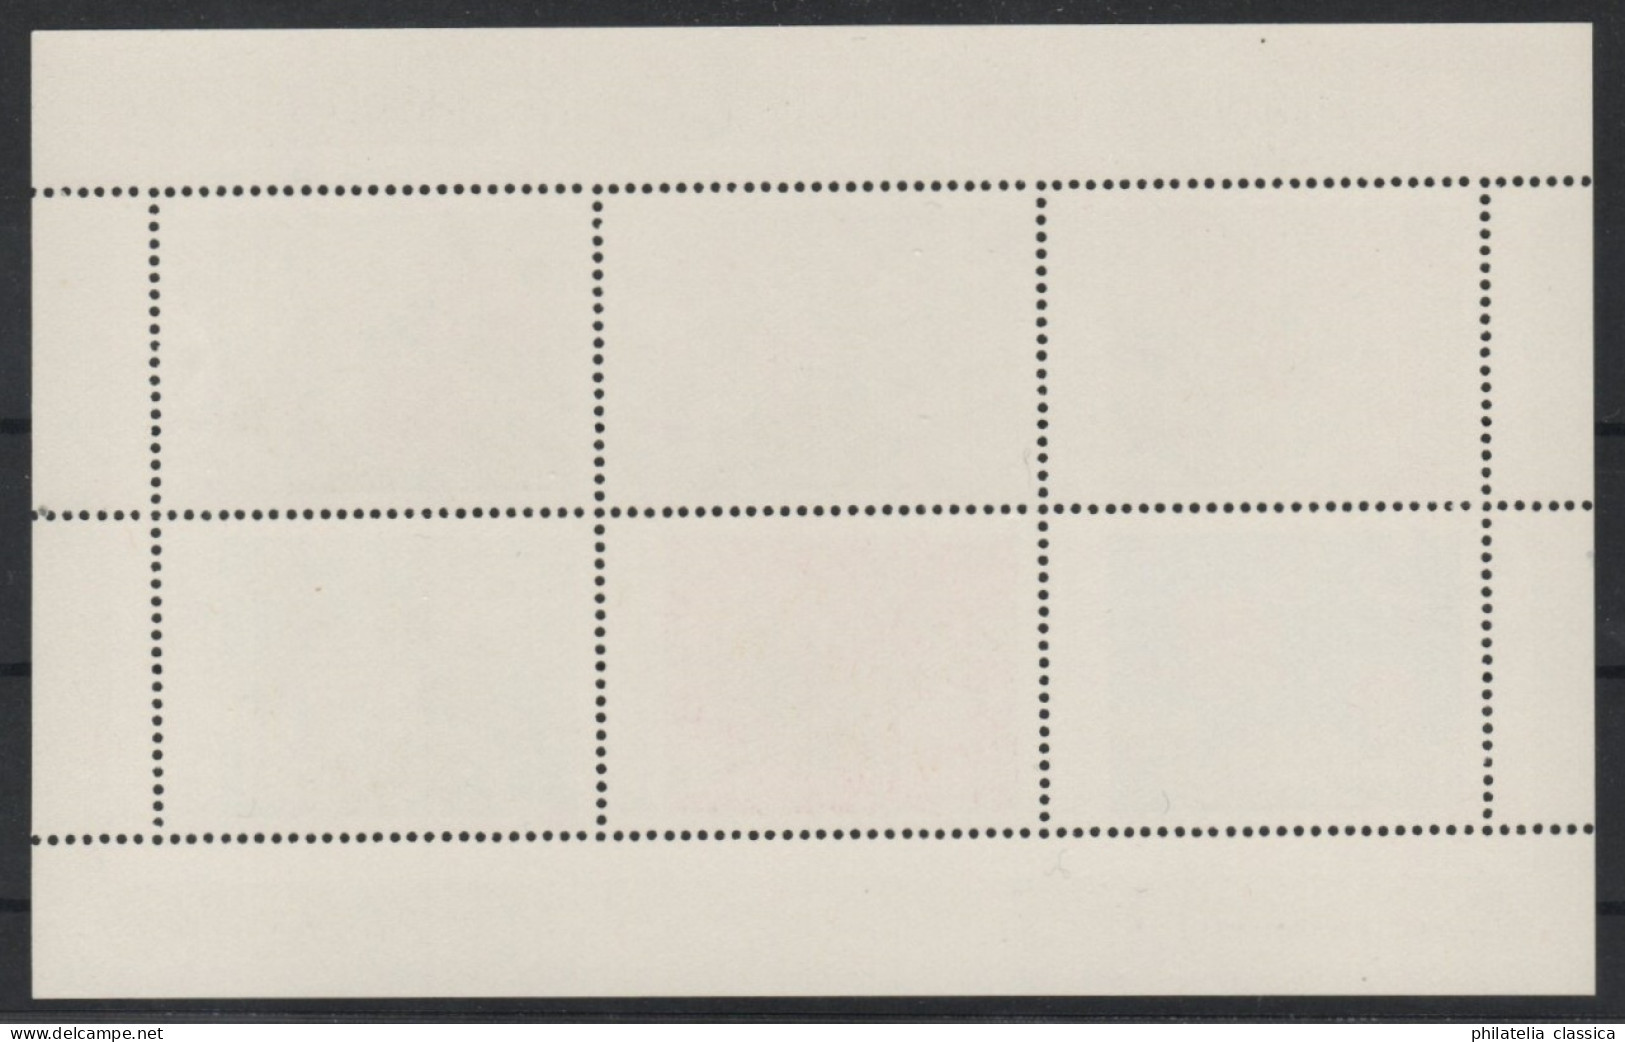 1983 MACAU / MACAO  Bl. 1 ** Block Heilpflanzen, Postfrisch TOP-Qualität, 240,-€ - Unused Stamps